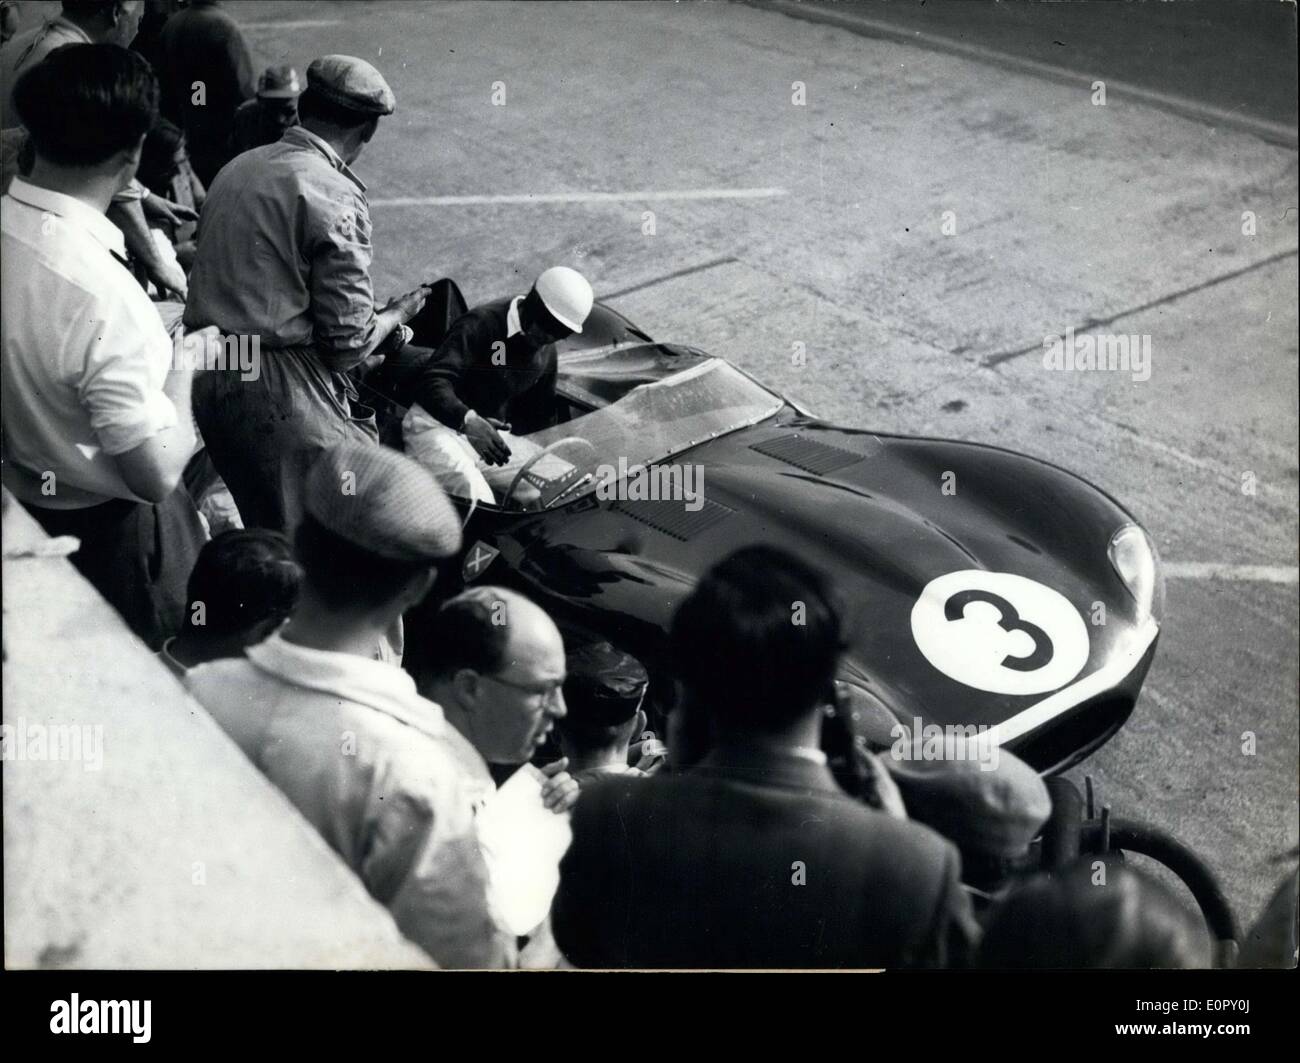 Giugno 23, 1957 - Ieri alle 4:00, le vetture da gara ha iniziato una 24 ore di gara. Jaguar numero 3 ha assunto la guida nel mezzo della notte. Foto Stock